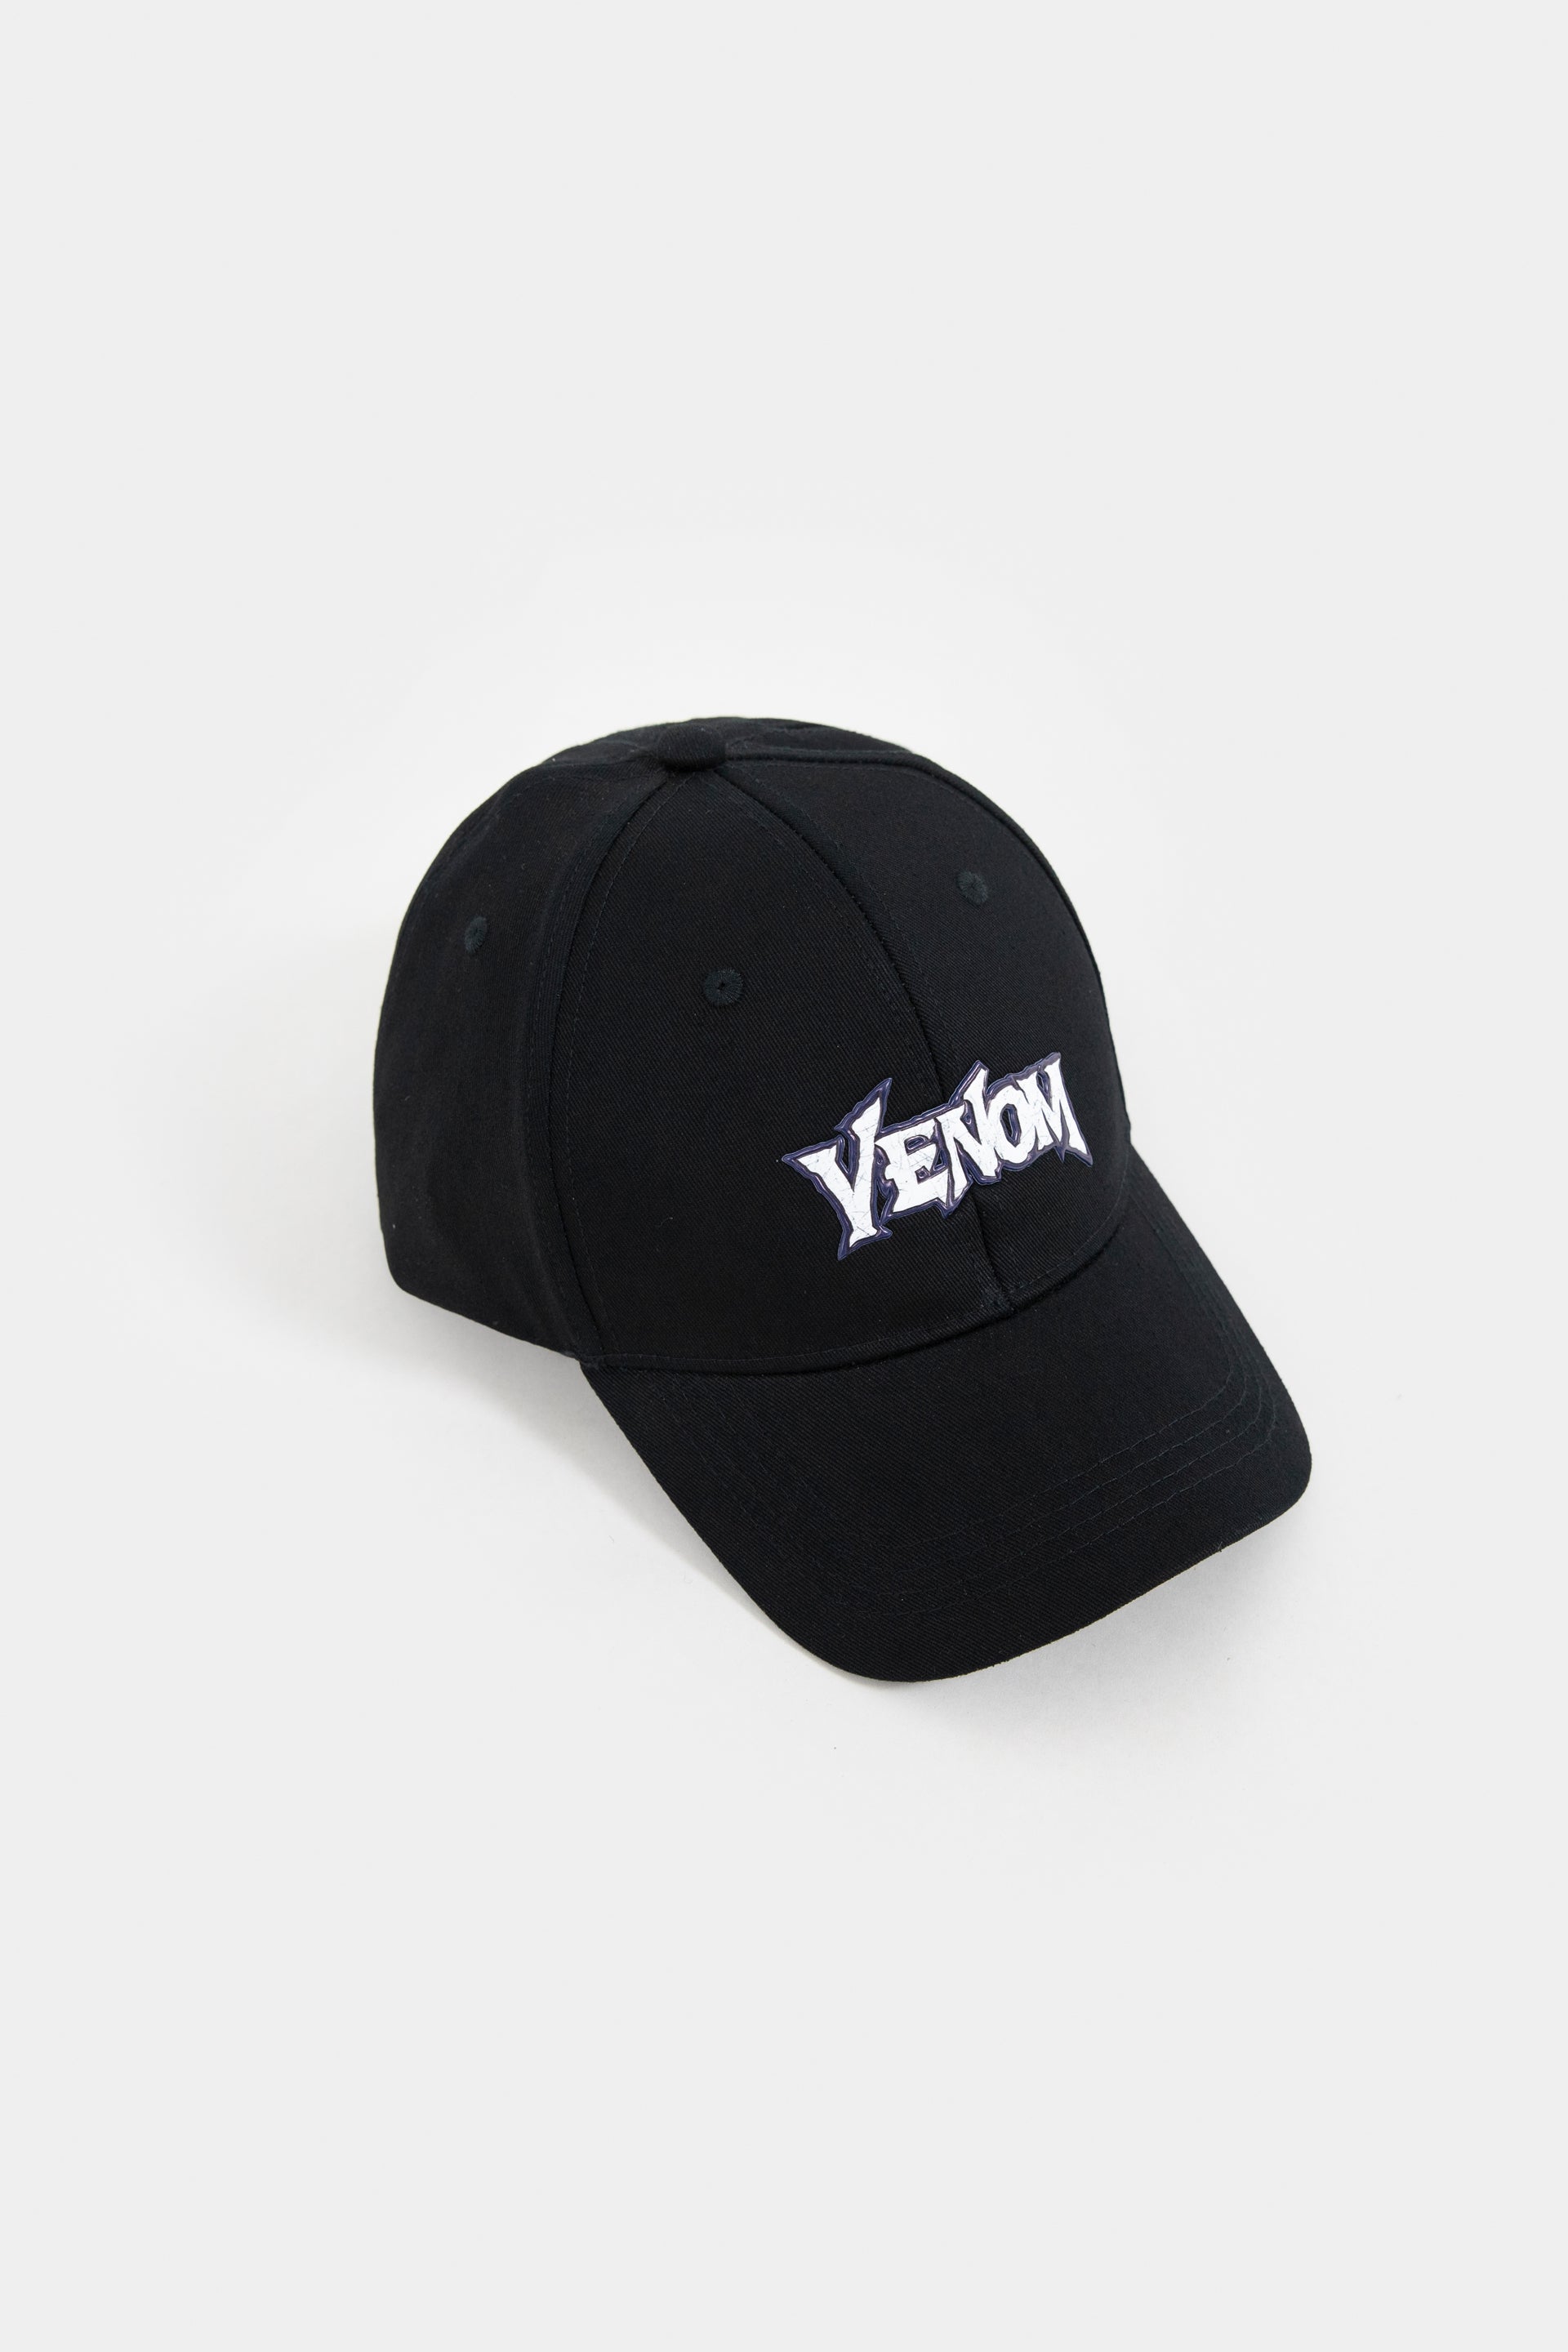 Embroidered Venom Cap